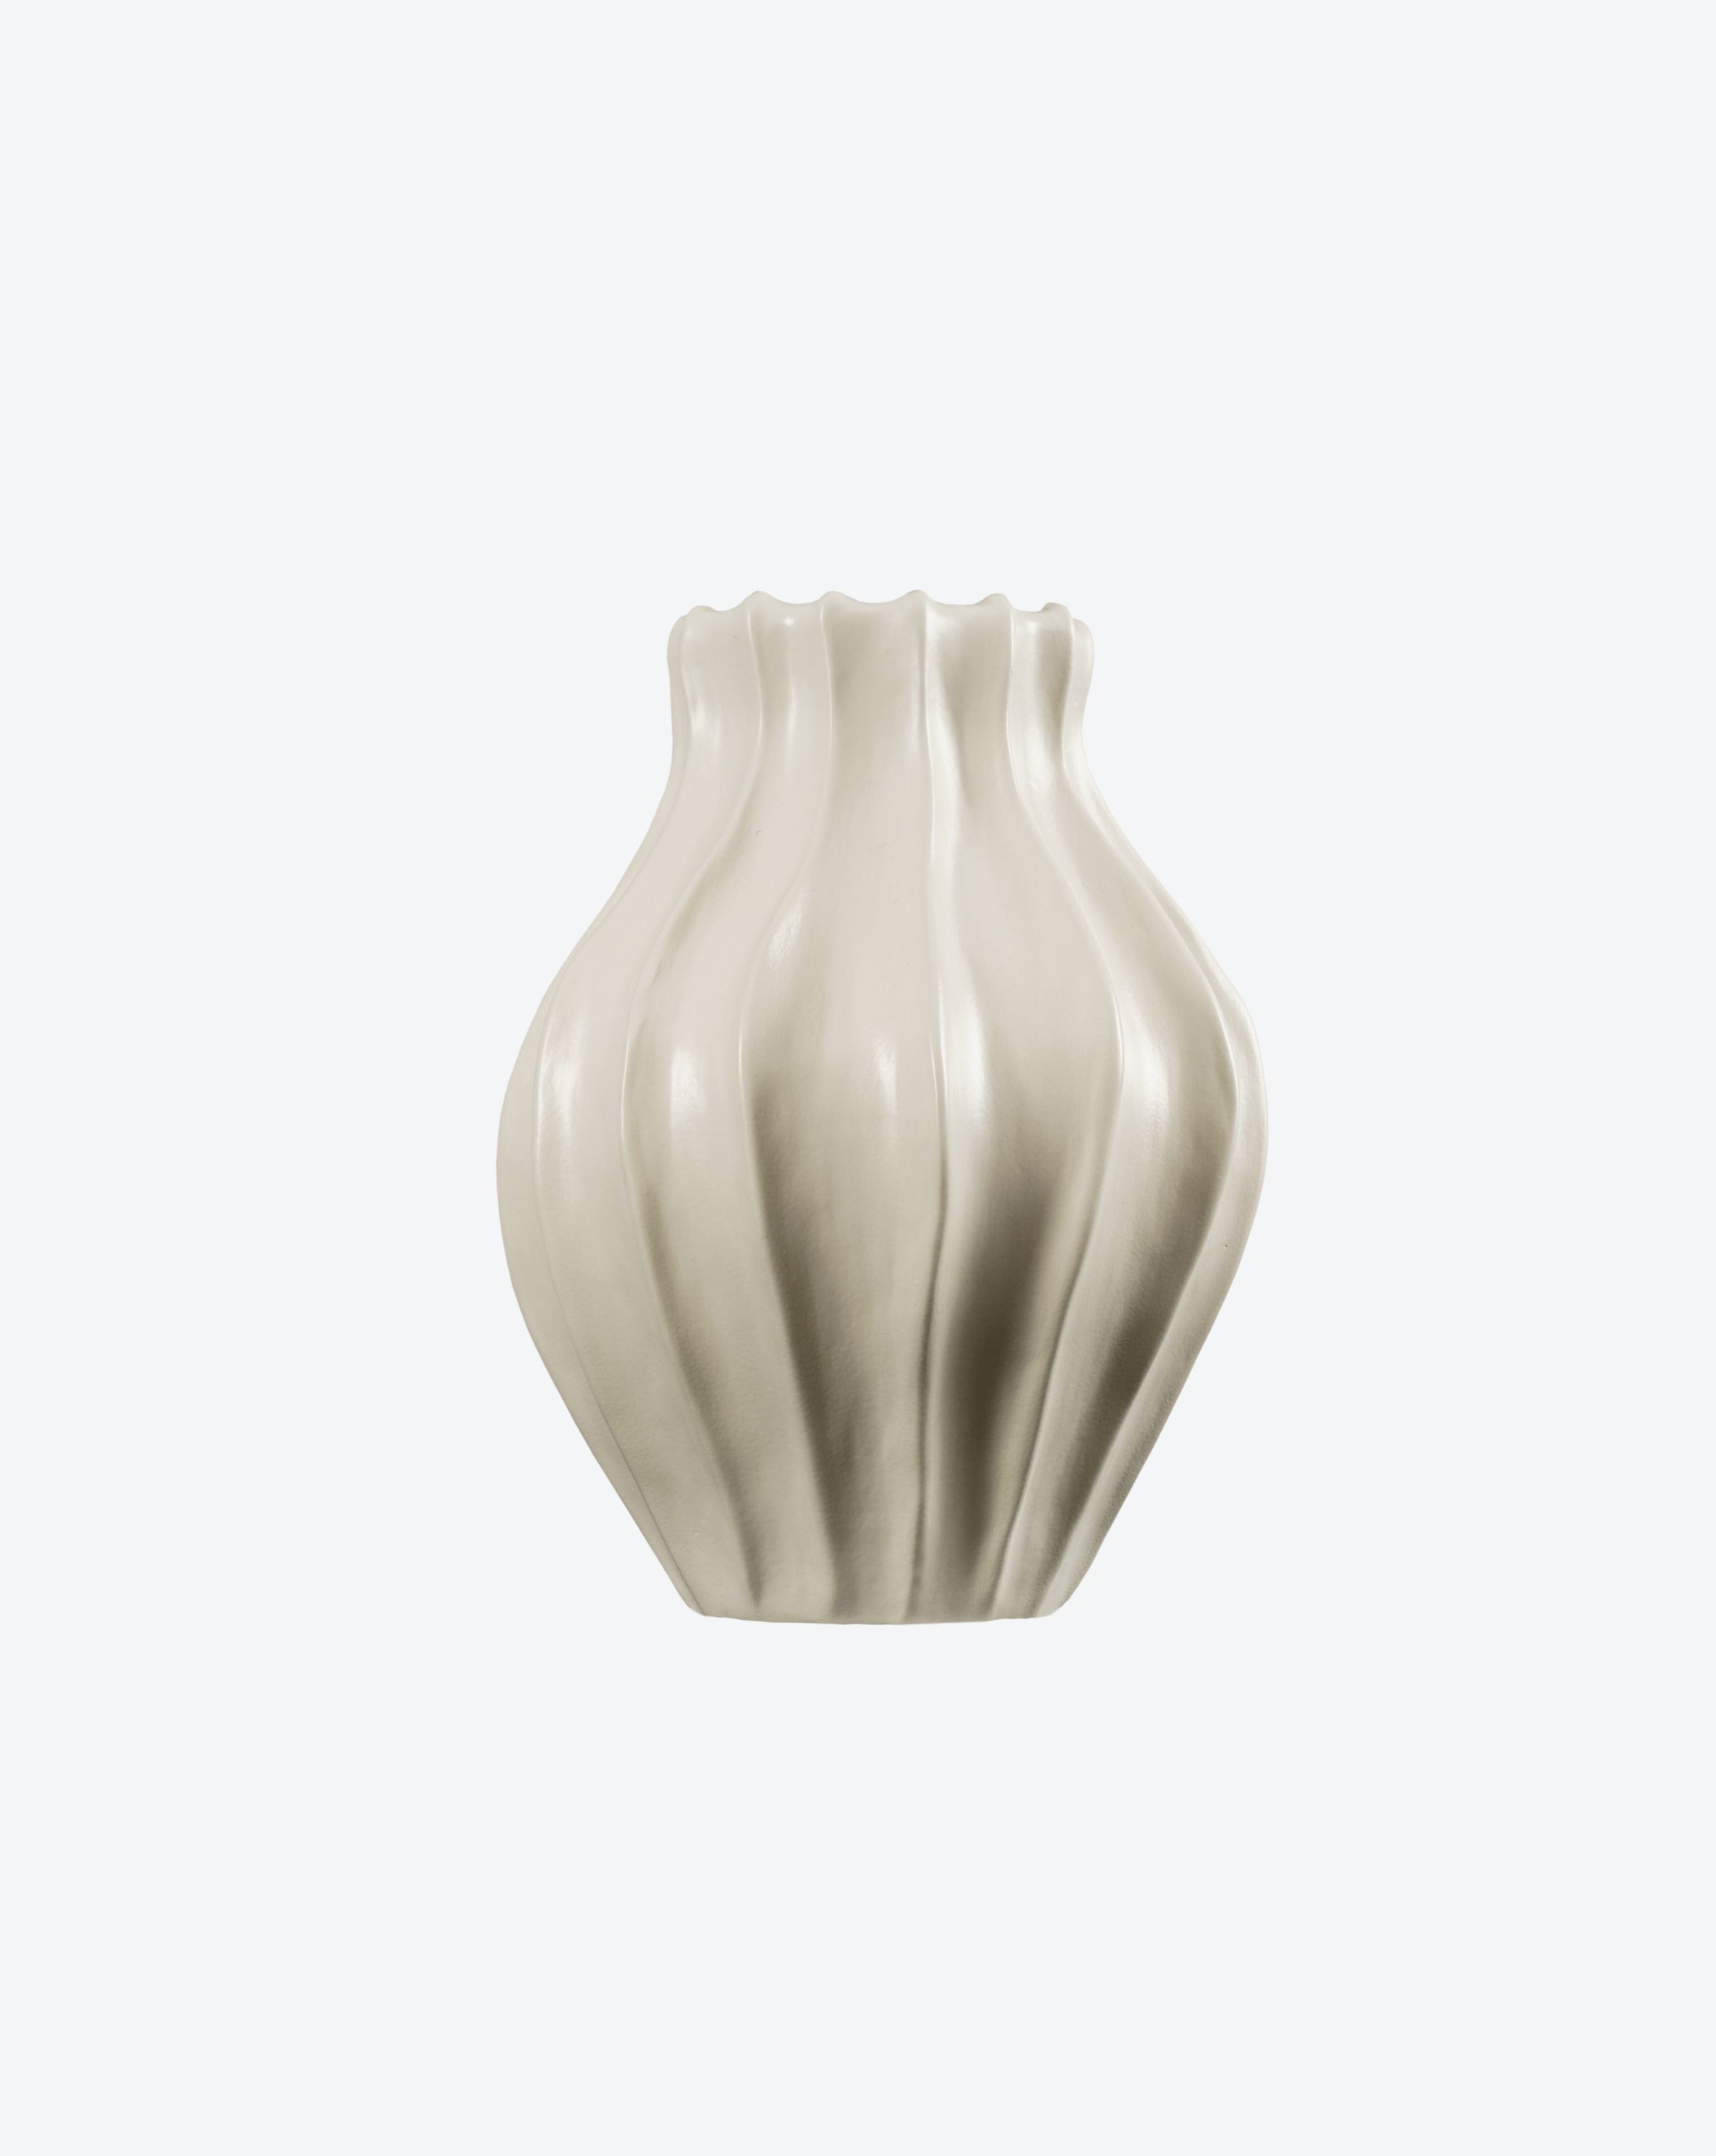 Medium Cloak Vase